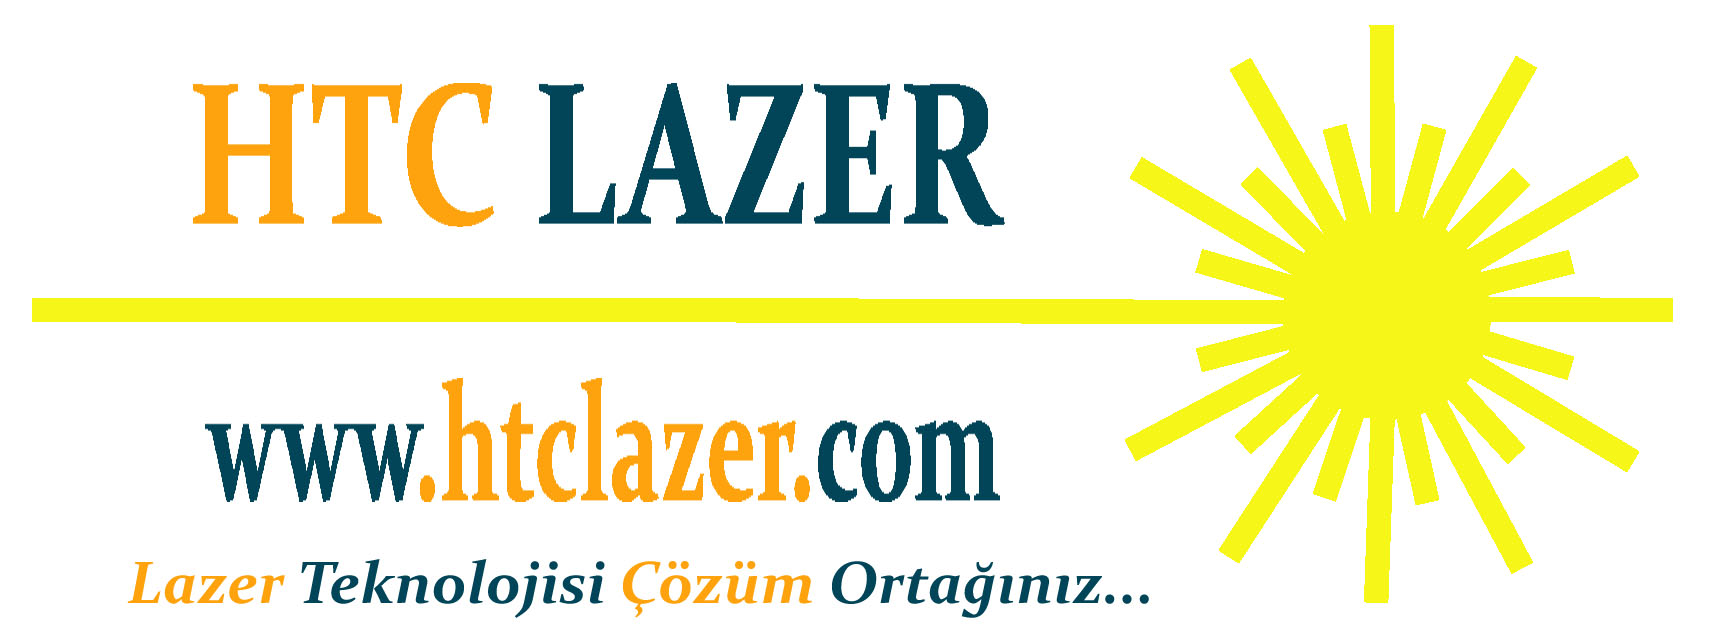 www.htclazer.com Türkiyenin En Büyük Lazer Mağazası